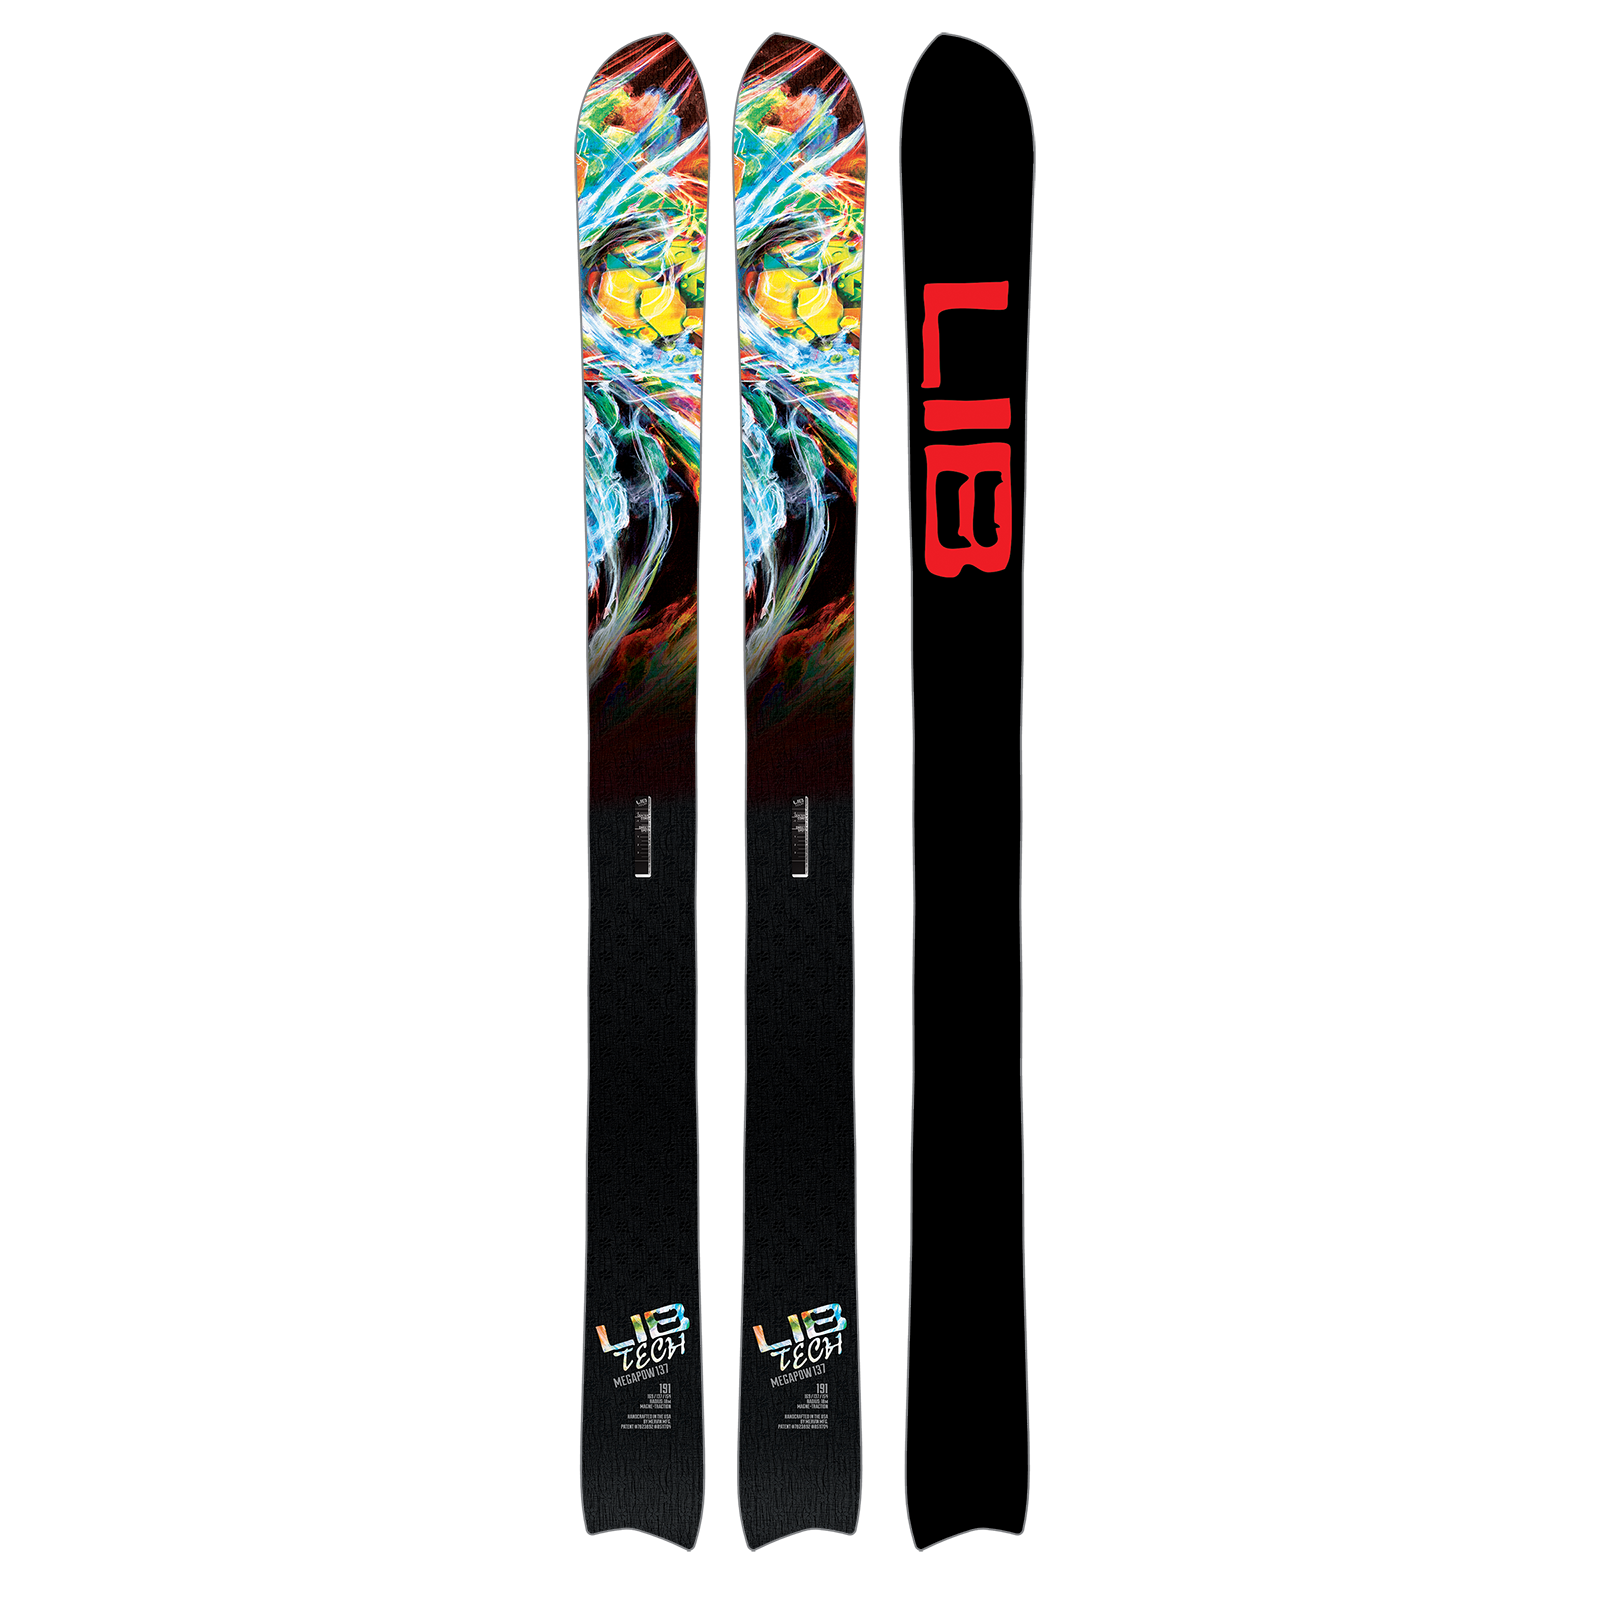 Main ski